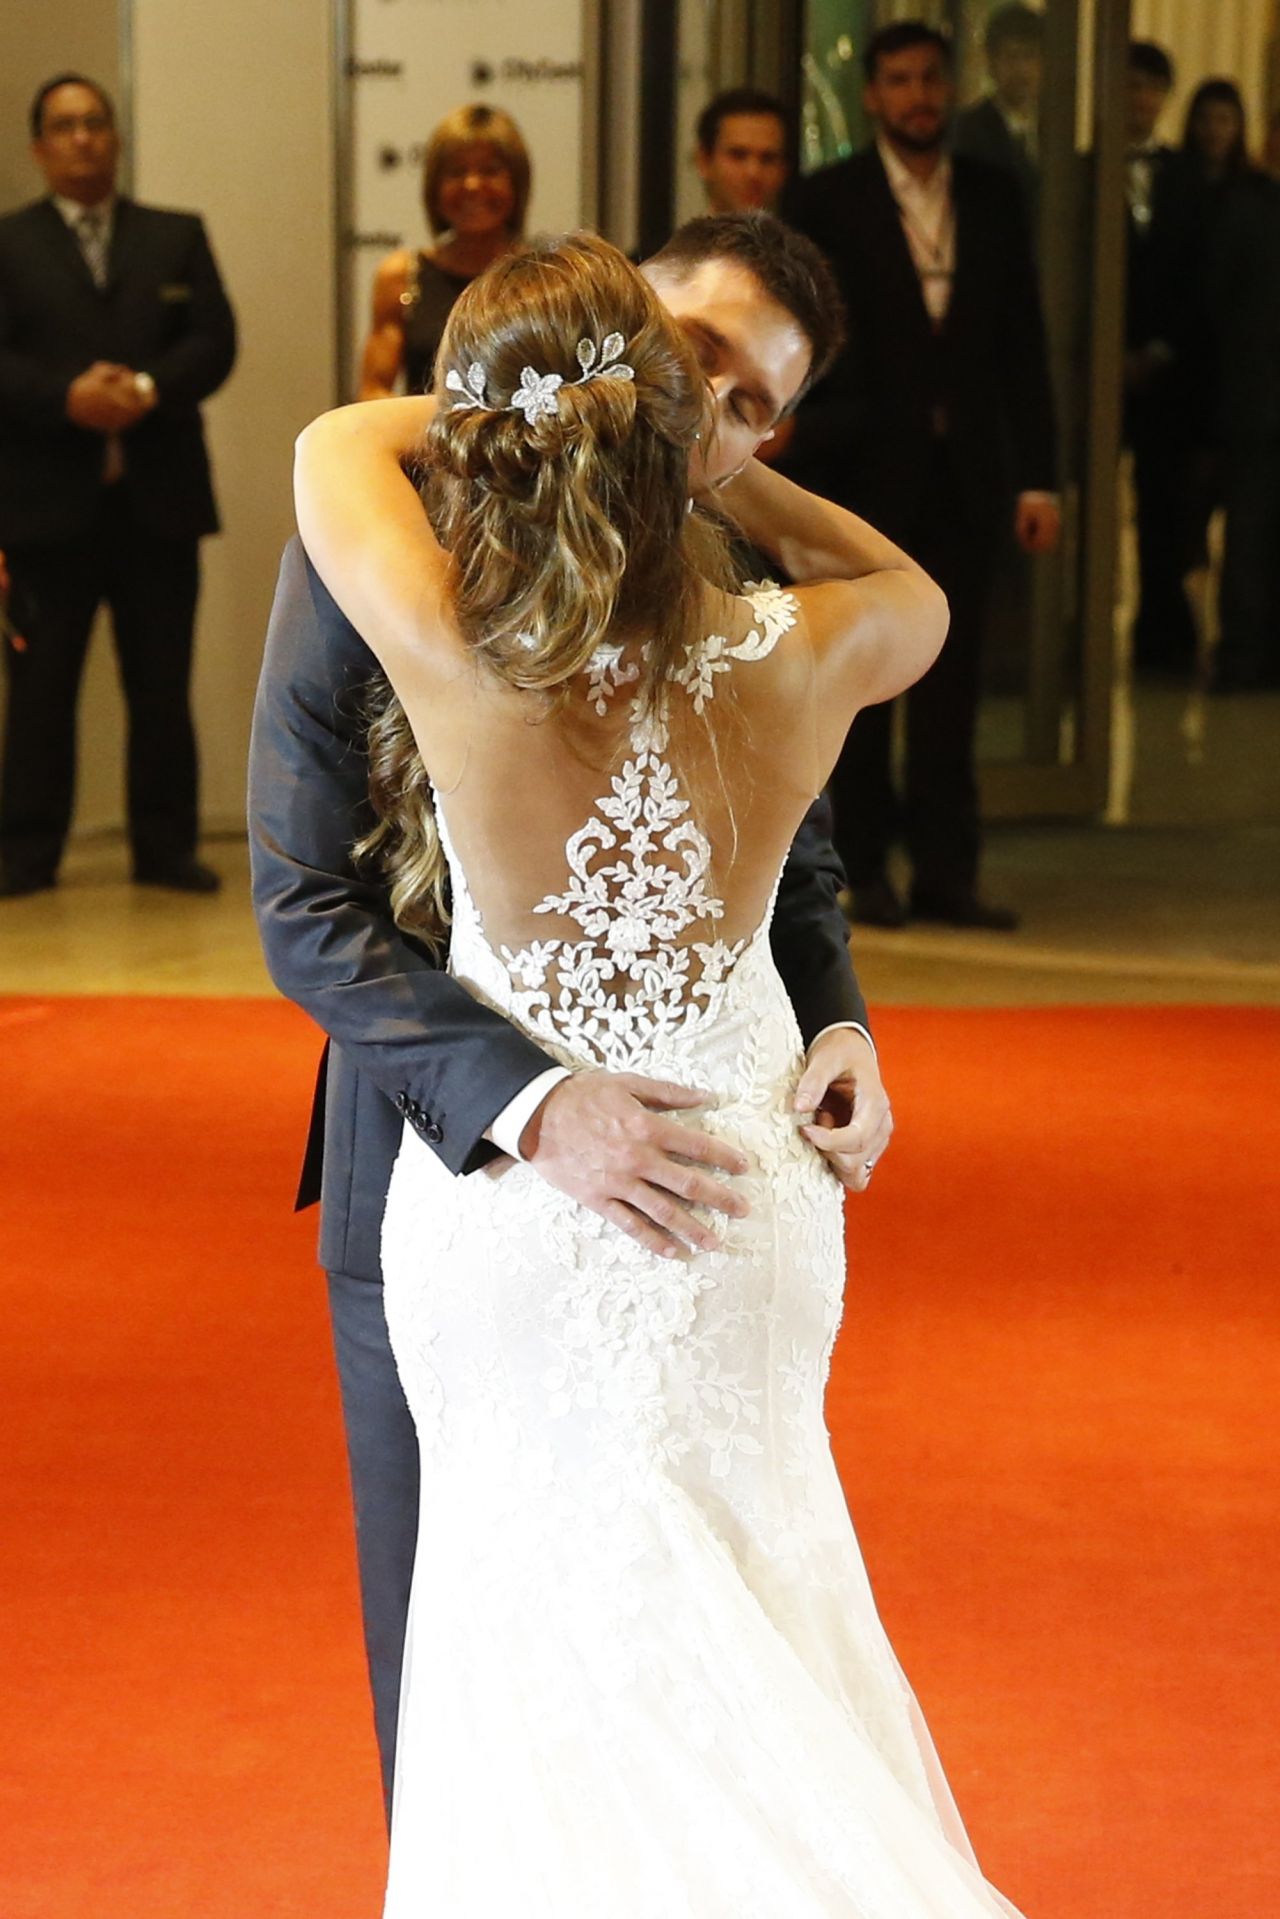 Lionel Messi And Wife Antonella Roccuzzo Wedding Reception In Argentina 06 30 2017 Celebmafia